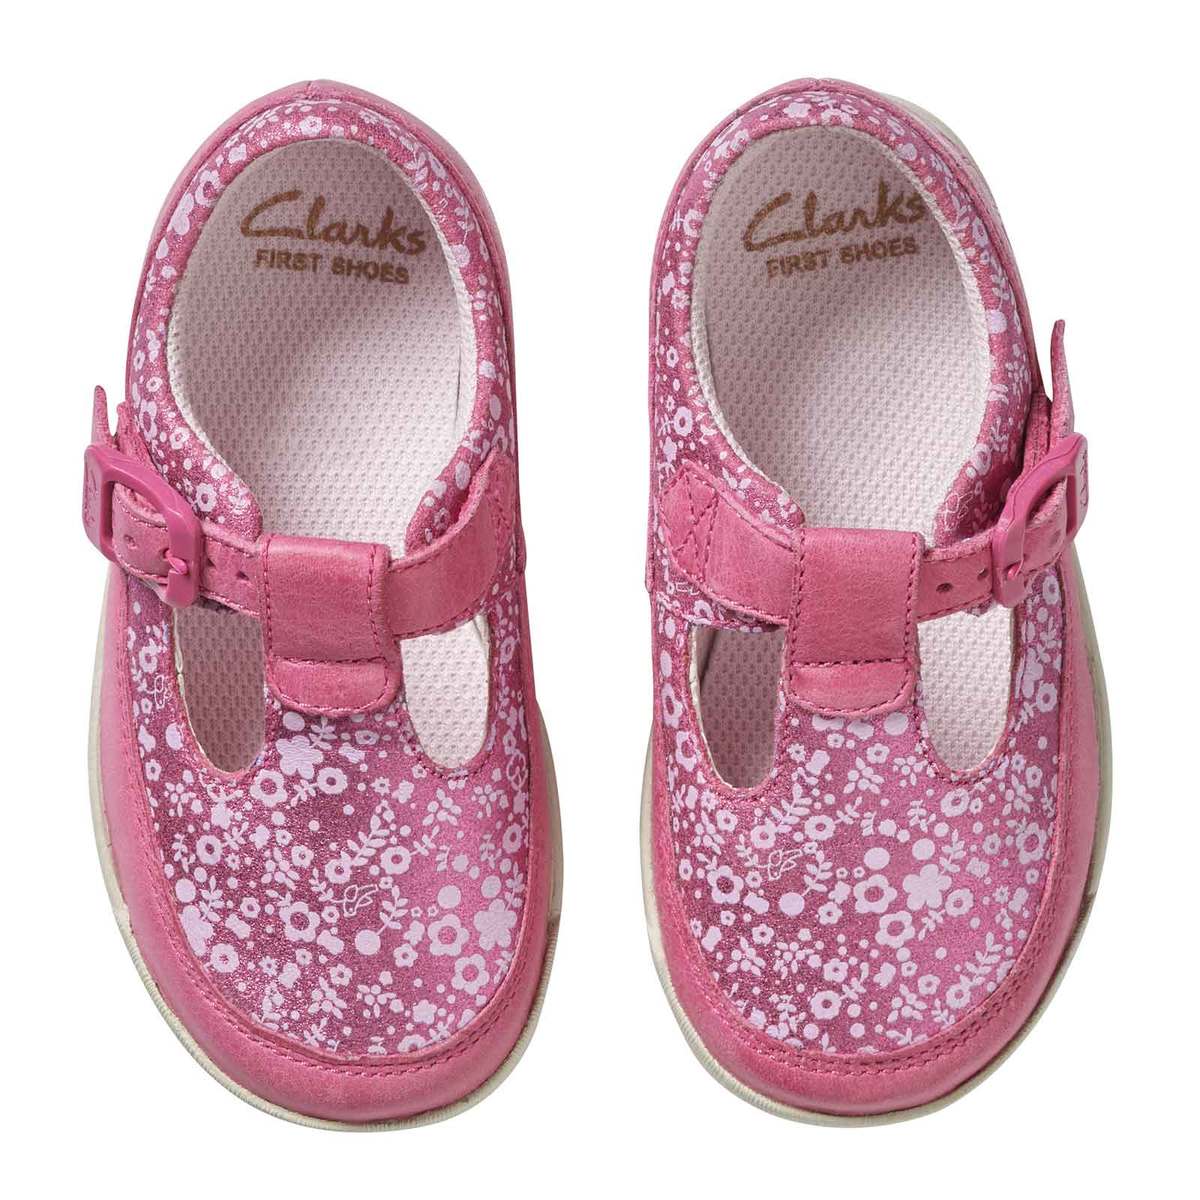 clarks children's shoes discount code